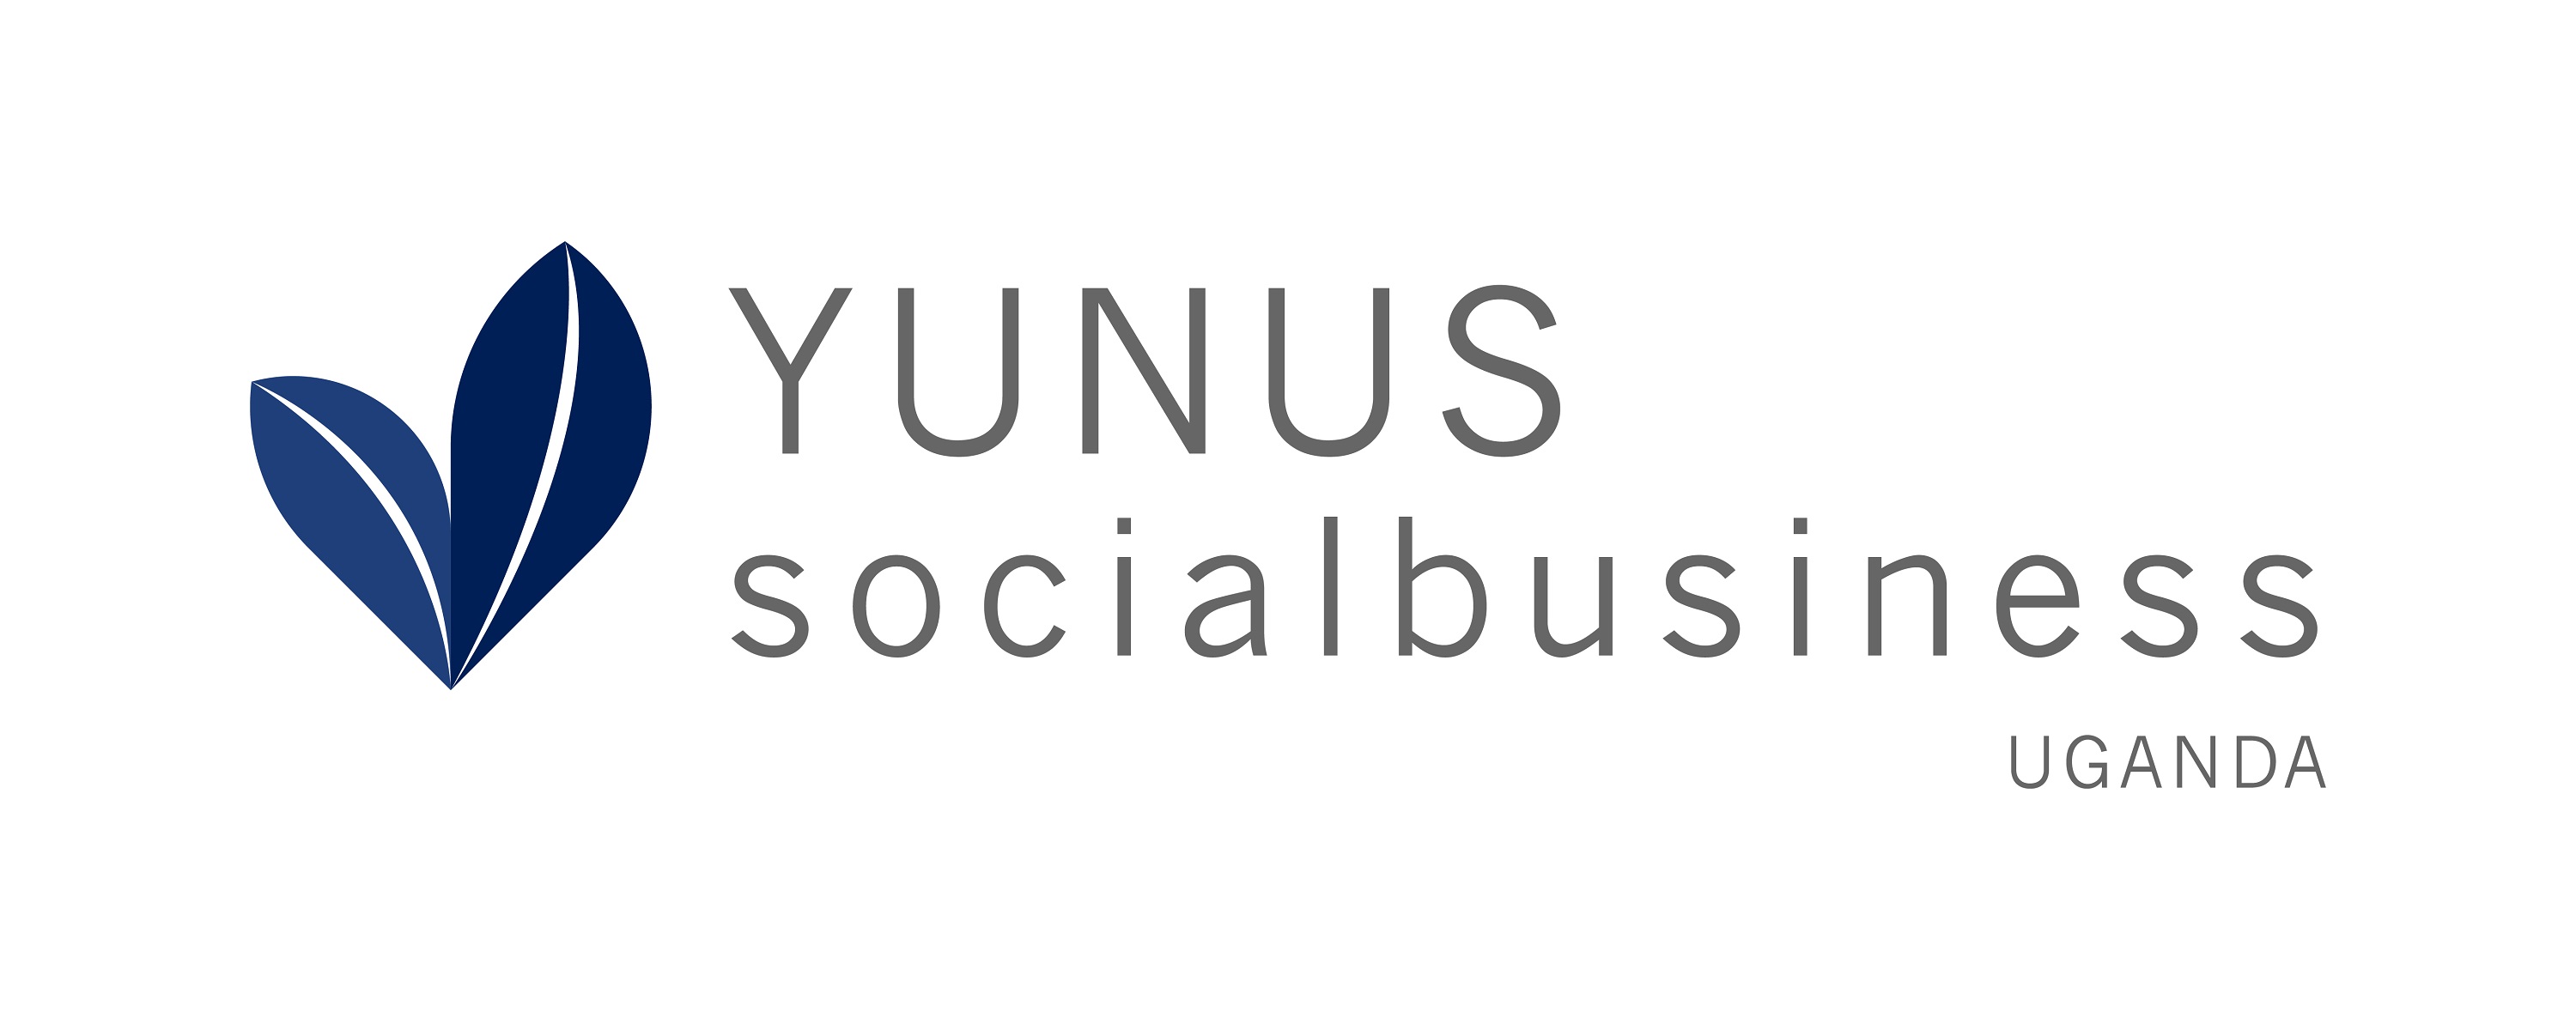 Yunus Social Business Uganda